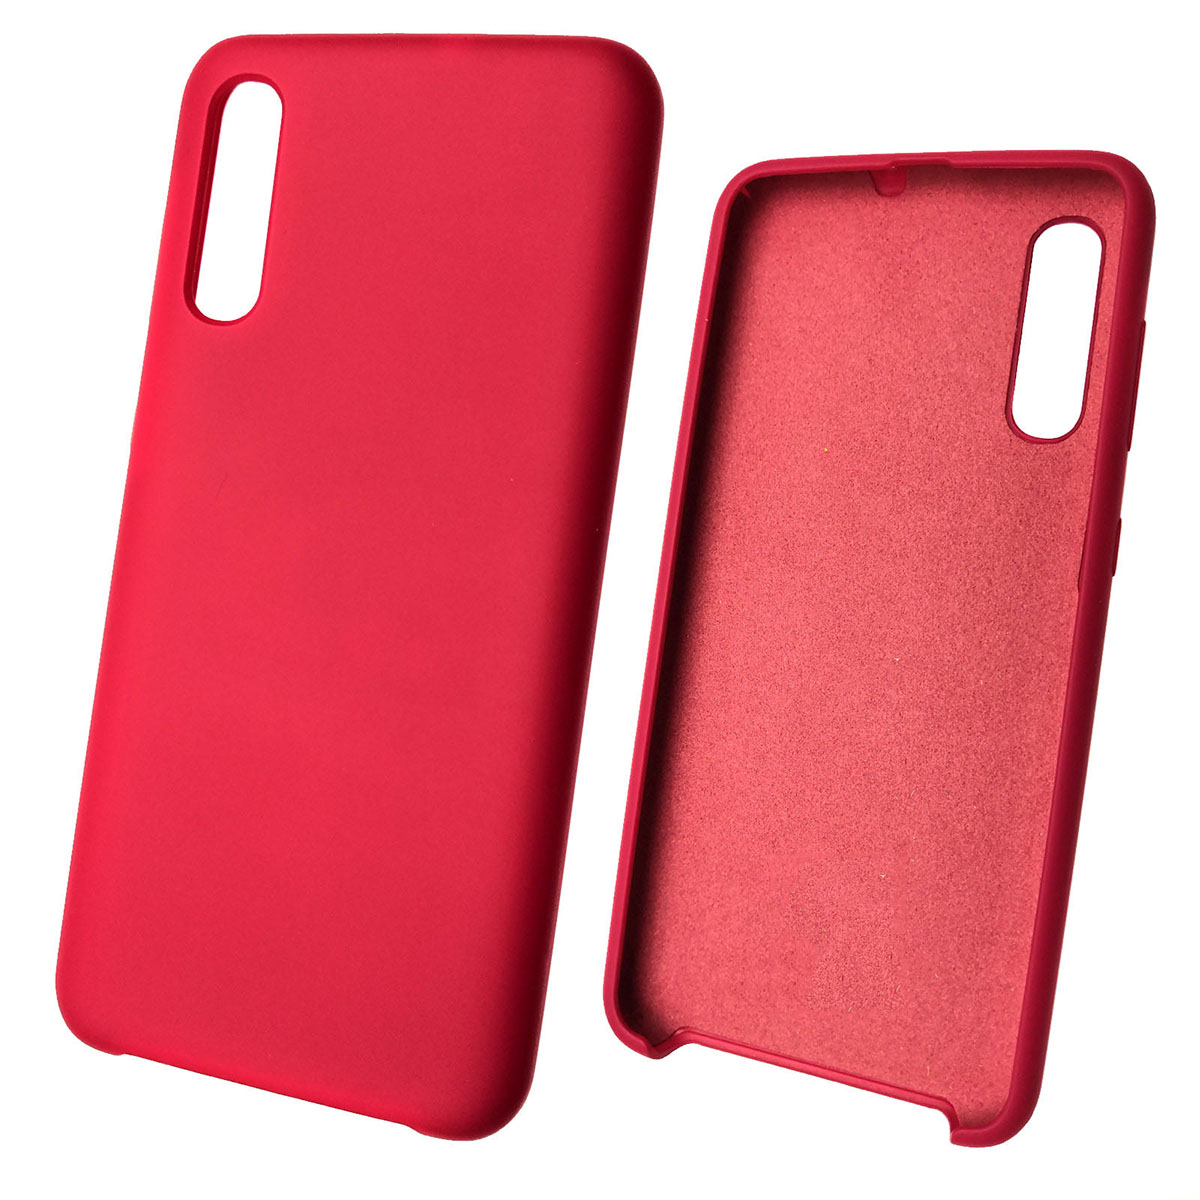 Чехол накладка Silicon Cover для SAMSUNG Galaxy A50 (SM-A505), A30s (SM-A307), A50s (SM-A507), силикон, бархат, цвет красная роза.